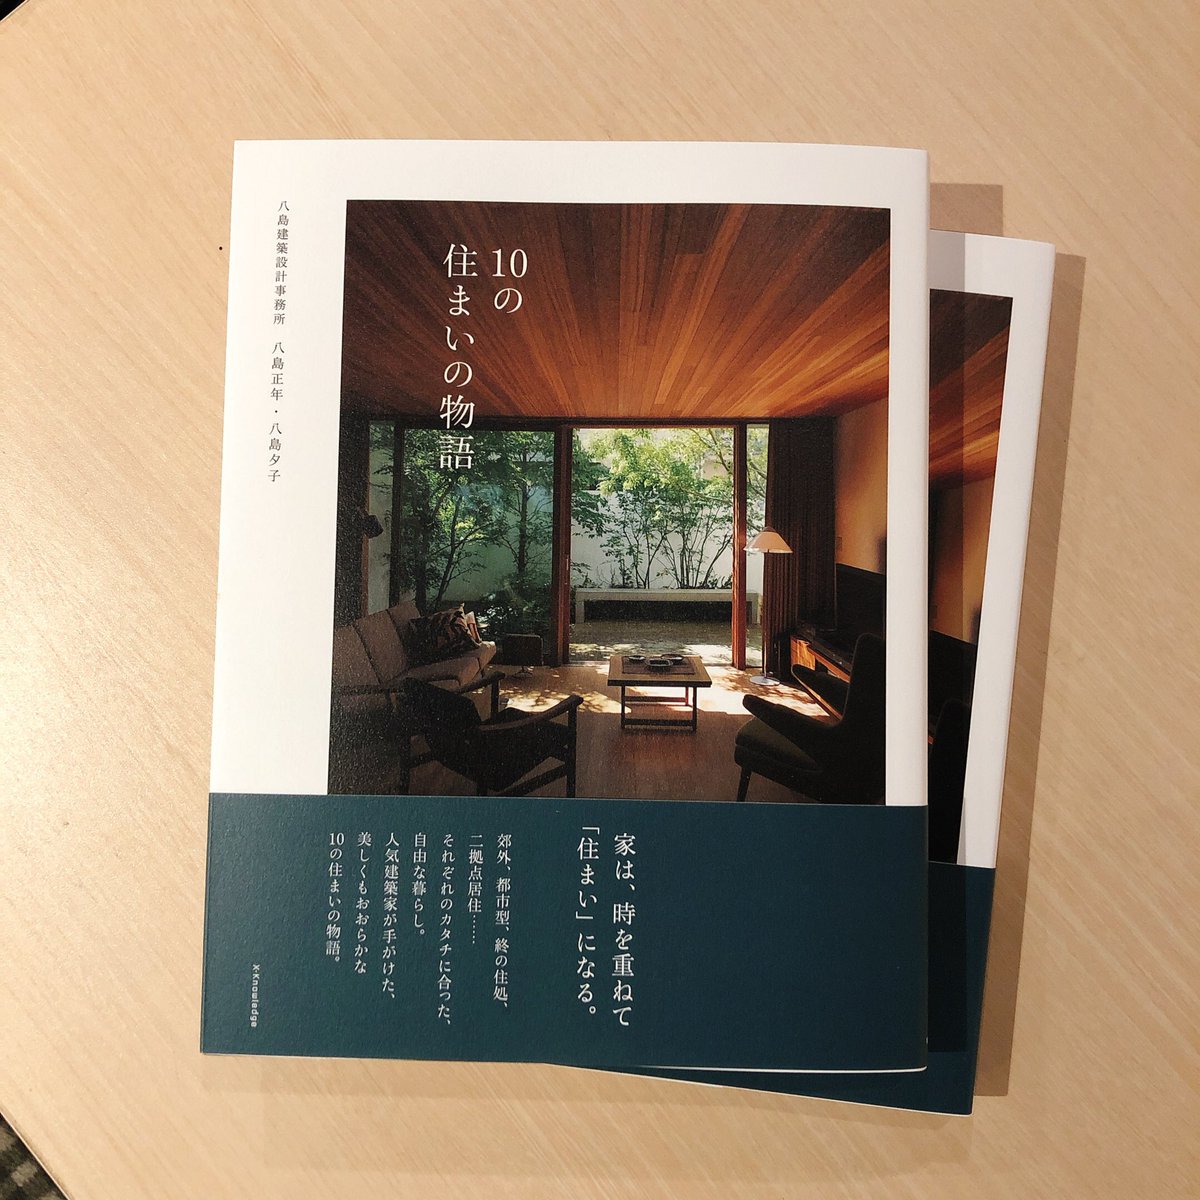 Hmv Books Shibuya على تويتر 6f建築 八島建築設計事務所 10の住まいの物語 入荷しました 設計 を手がけた10の家のその後を訪ね その家が時を経てどうやってその家族の暮らしに馴染み 住まい となっていったのか 設計の過程から現在の暮らしぶりまでを紹介した